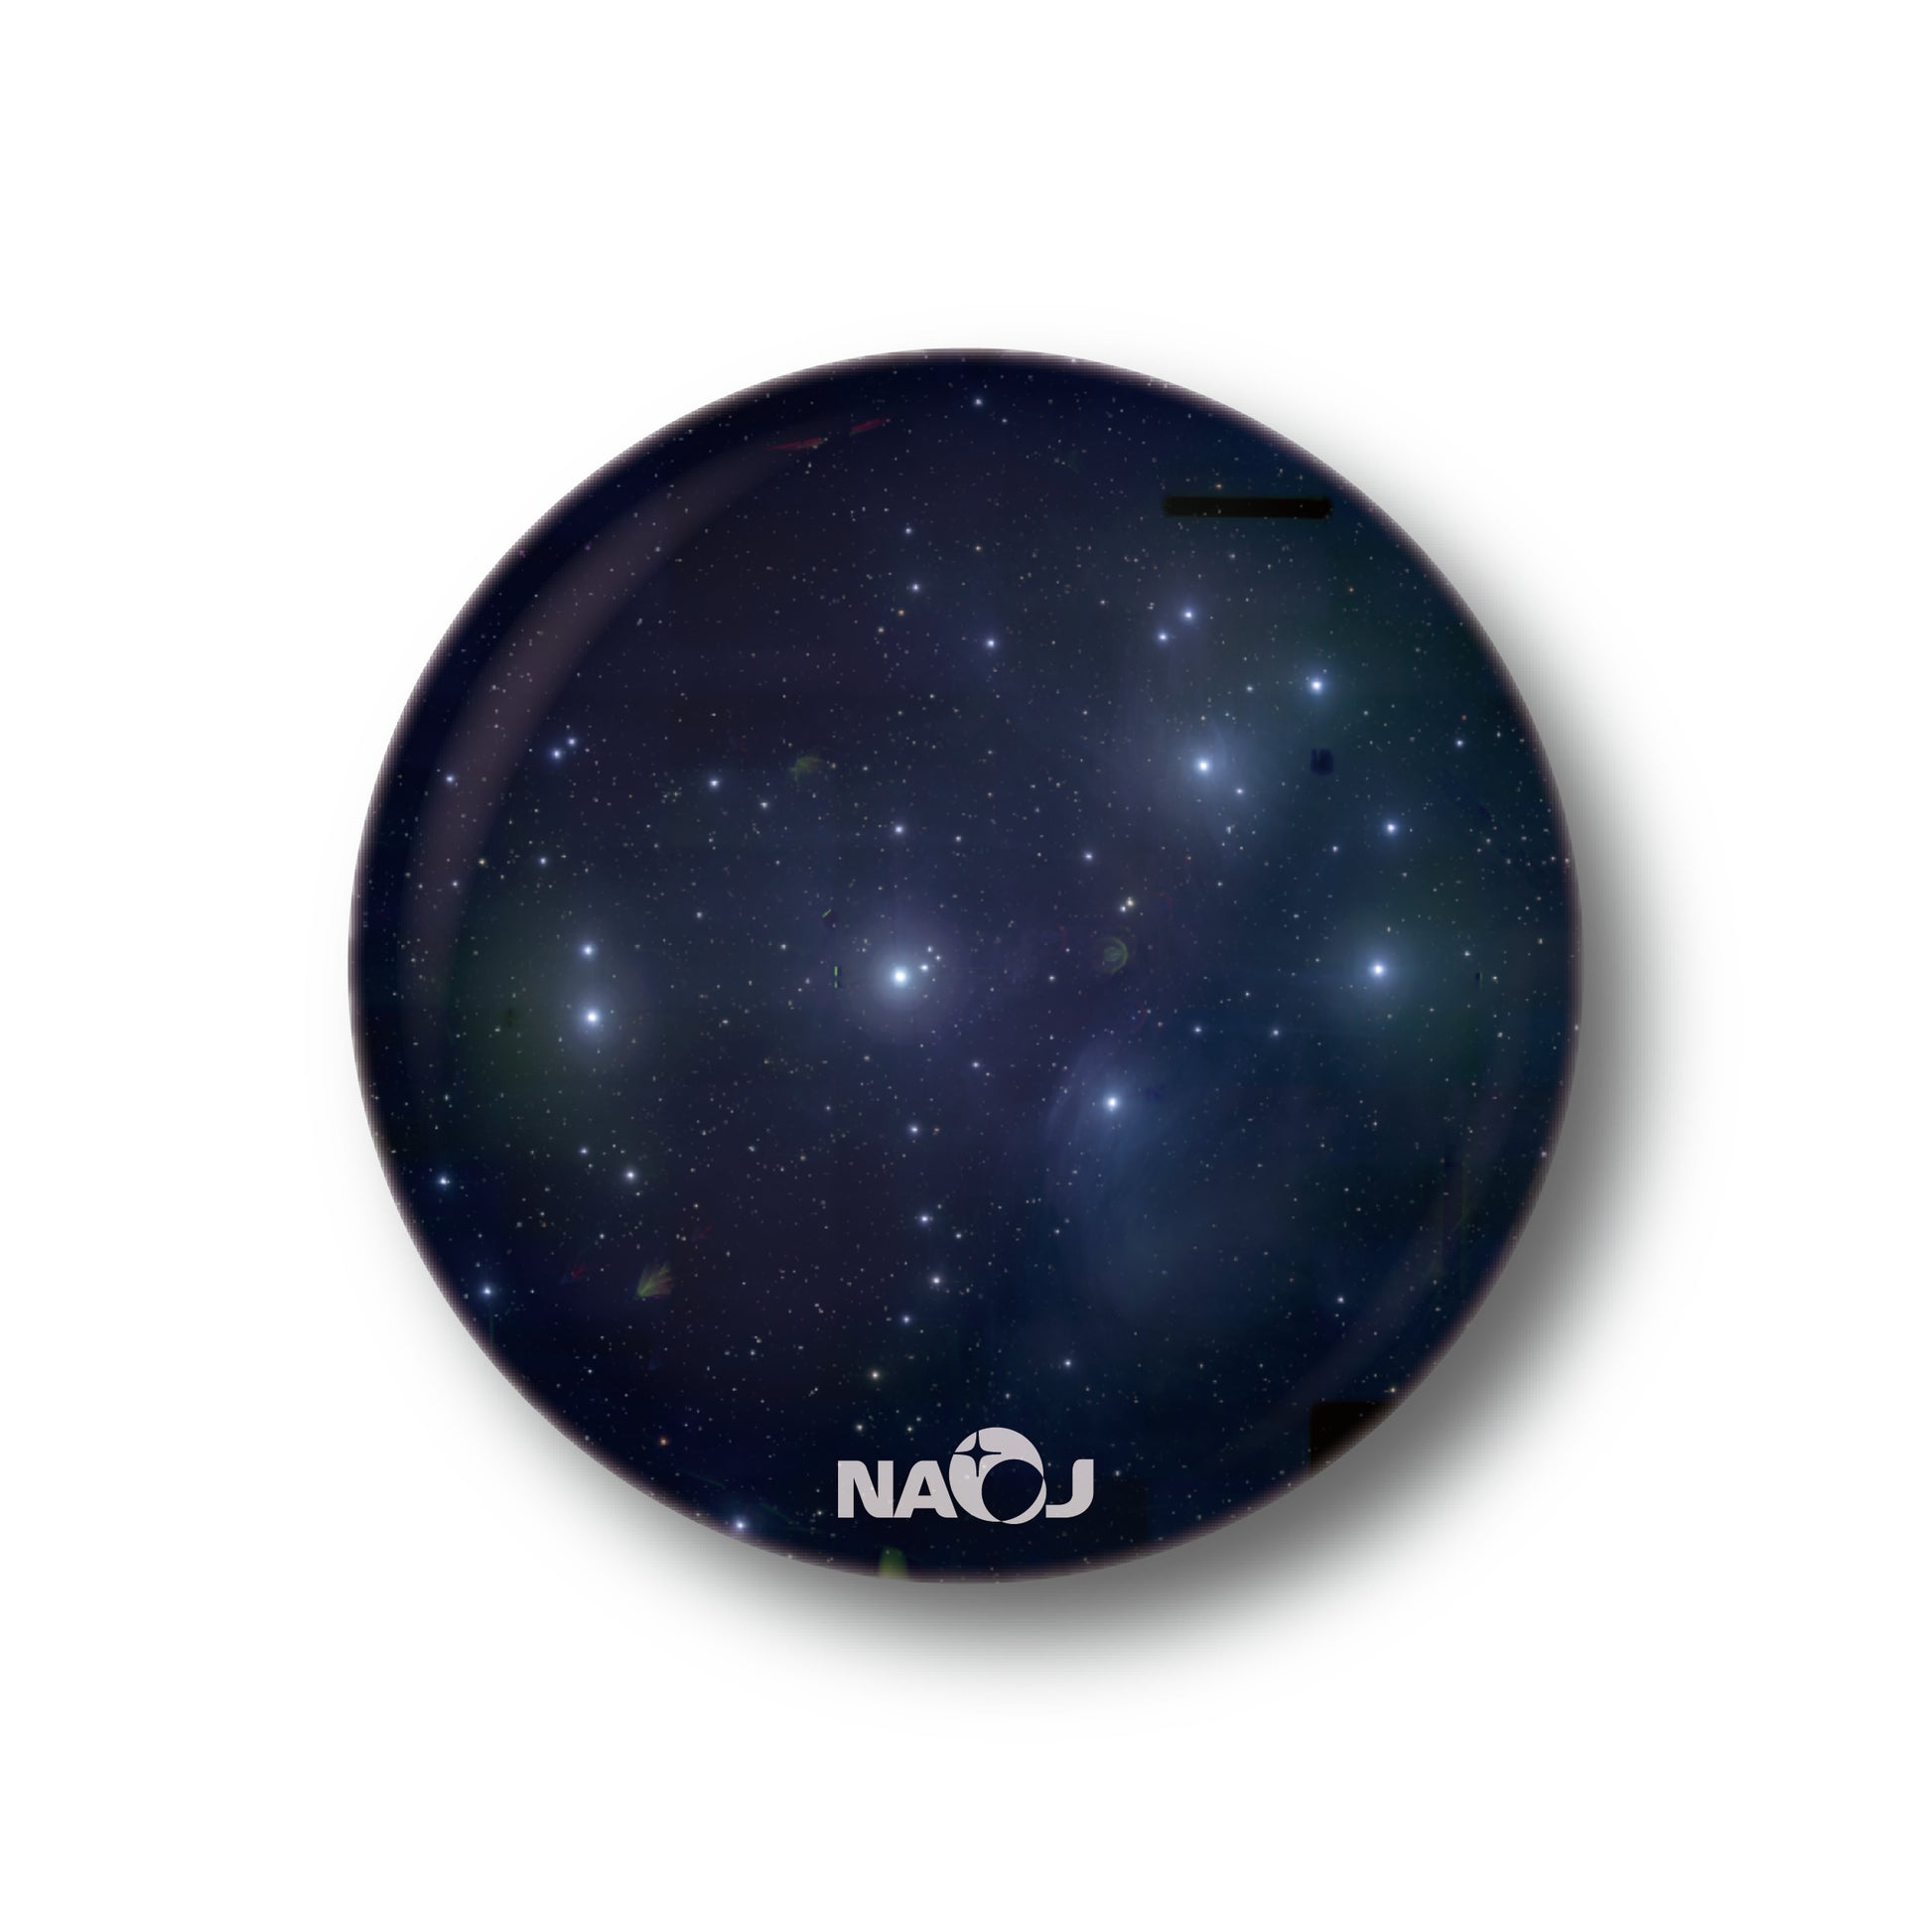 国立天文台  すばる望遠鏡HSCで見る宇宙  マグネット [小] プレアデス星団 (M45、和名「すばる」) 01